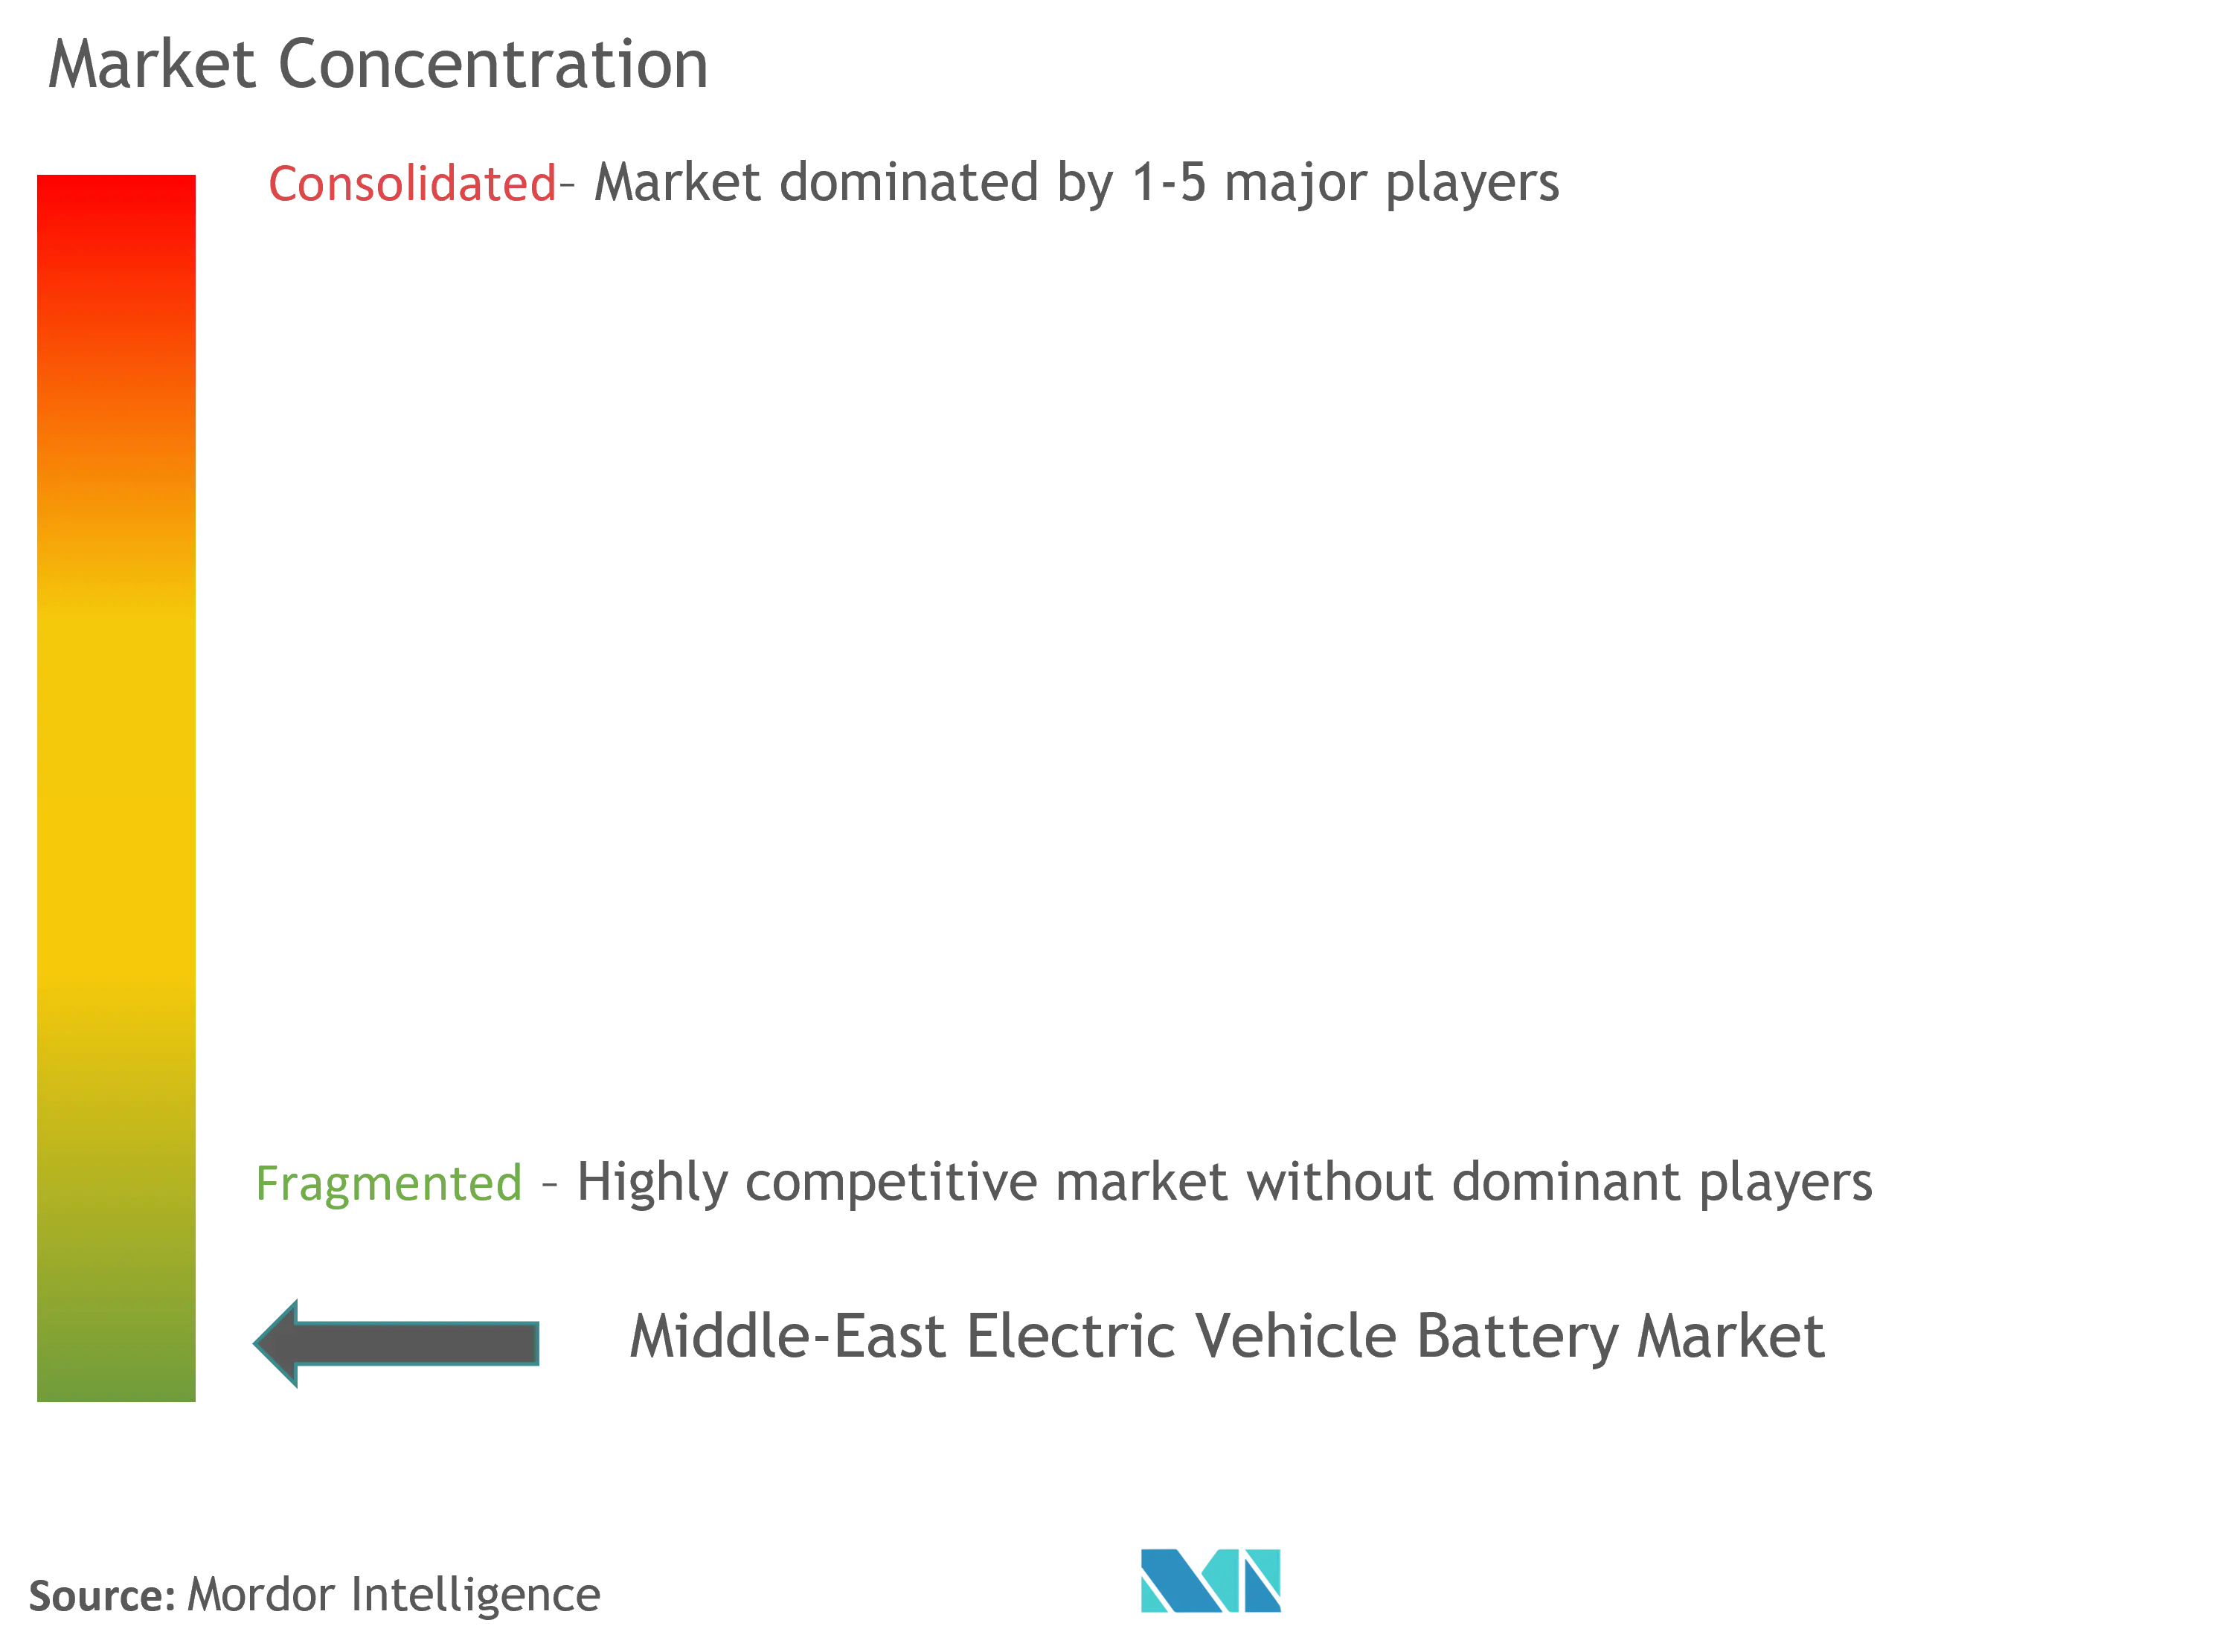 中東の電気自動車のバッテリー市場集中度